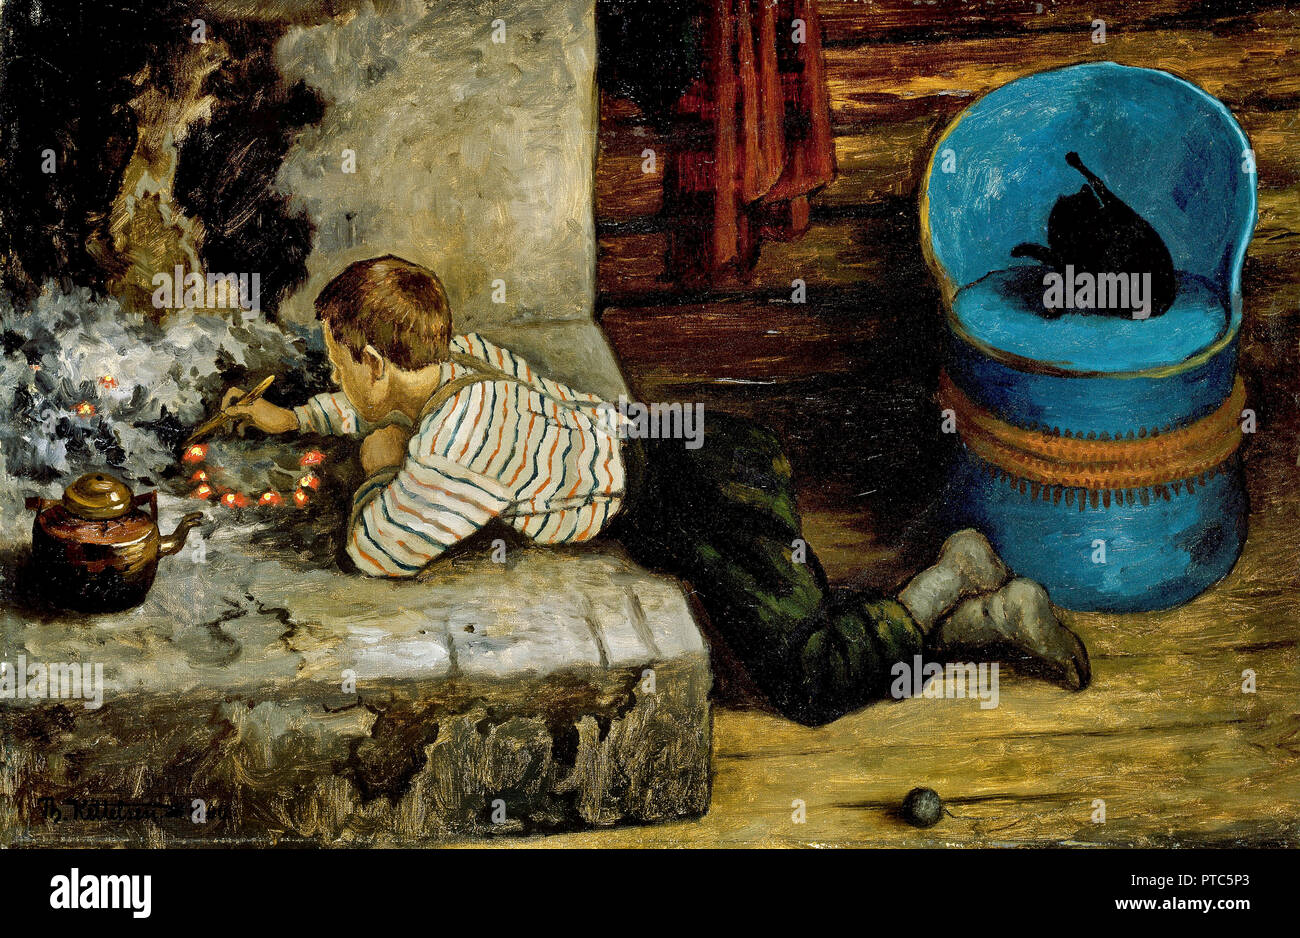 Theodor Kittelsen, la cenere Lad inserimenti nelle ceneri 1900, olio su tela, Galleria Nazionale di Norvegia, Oslo, Norvegia. Foto Stock